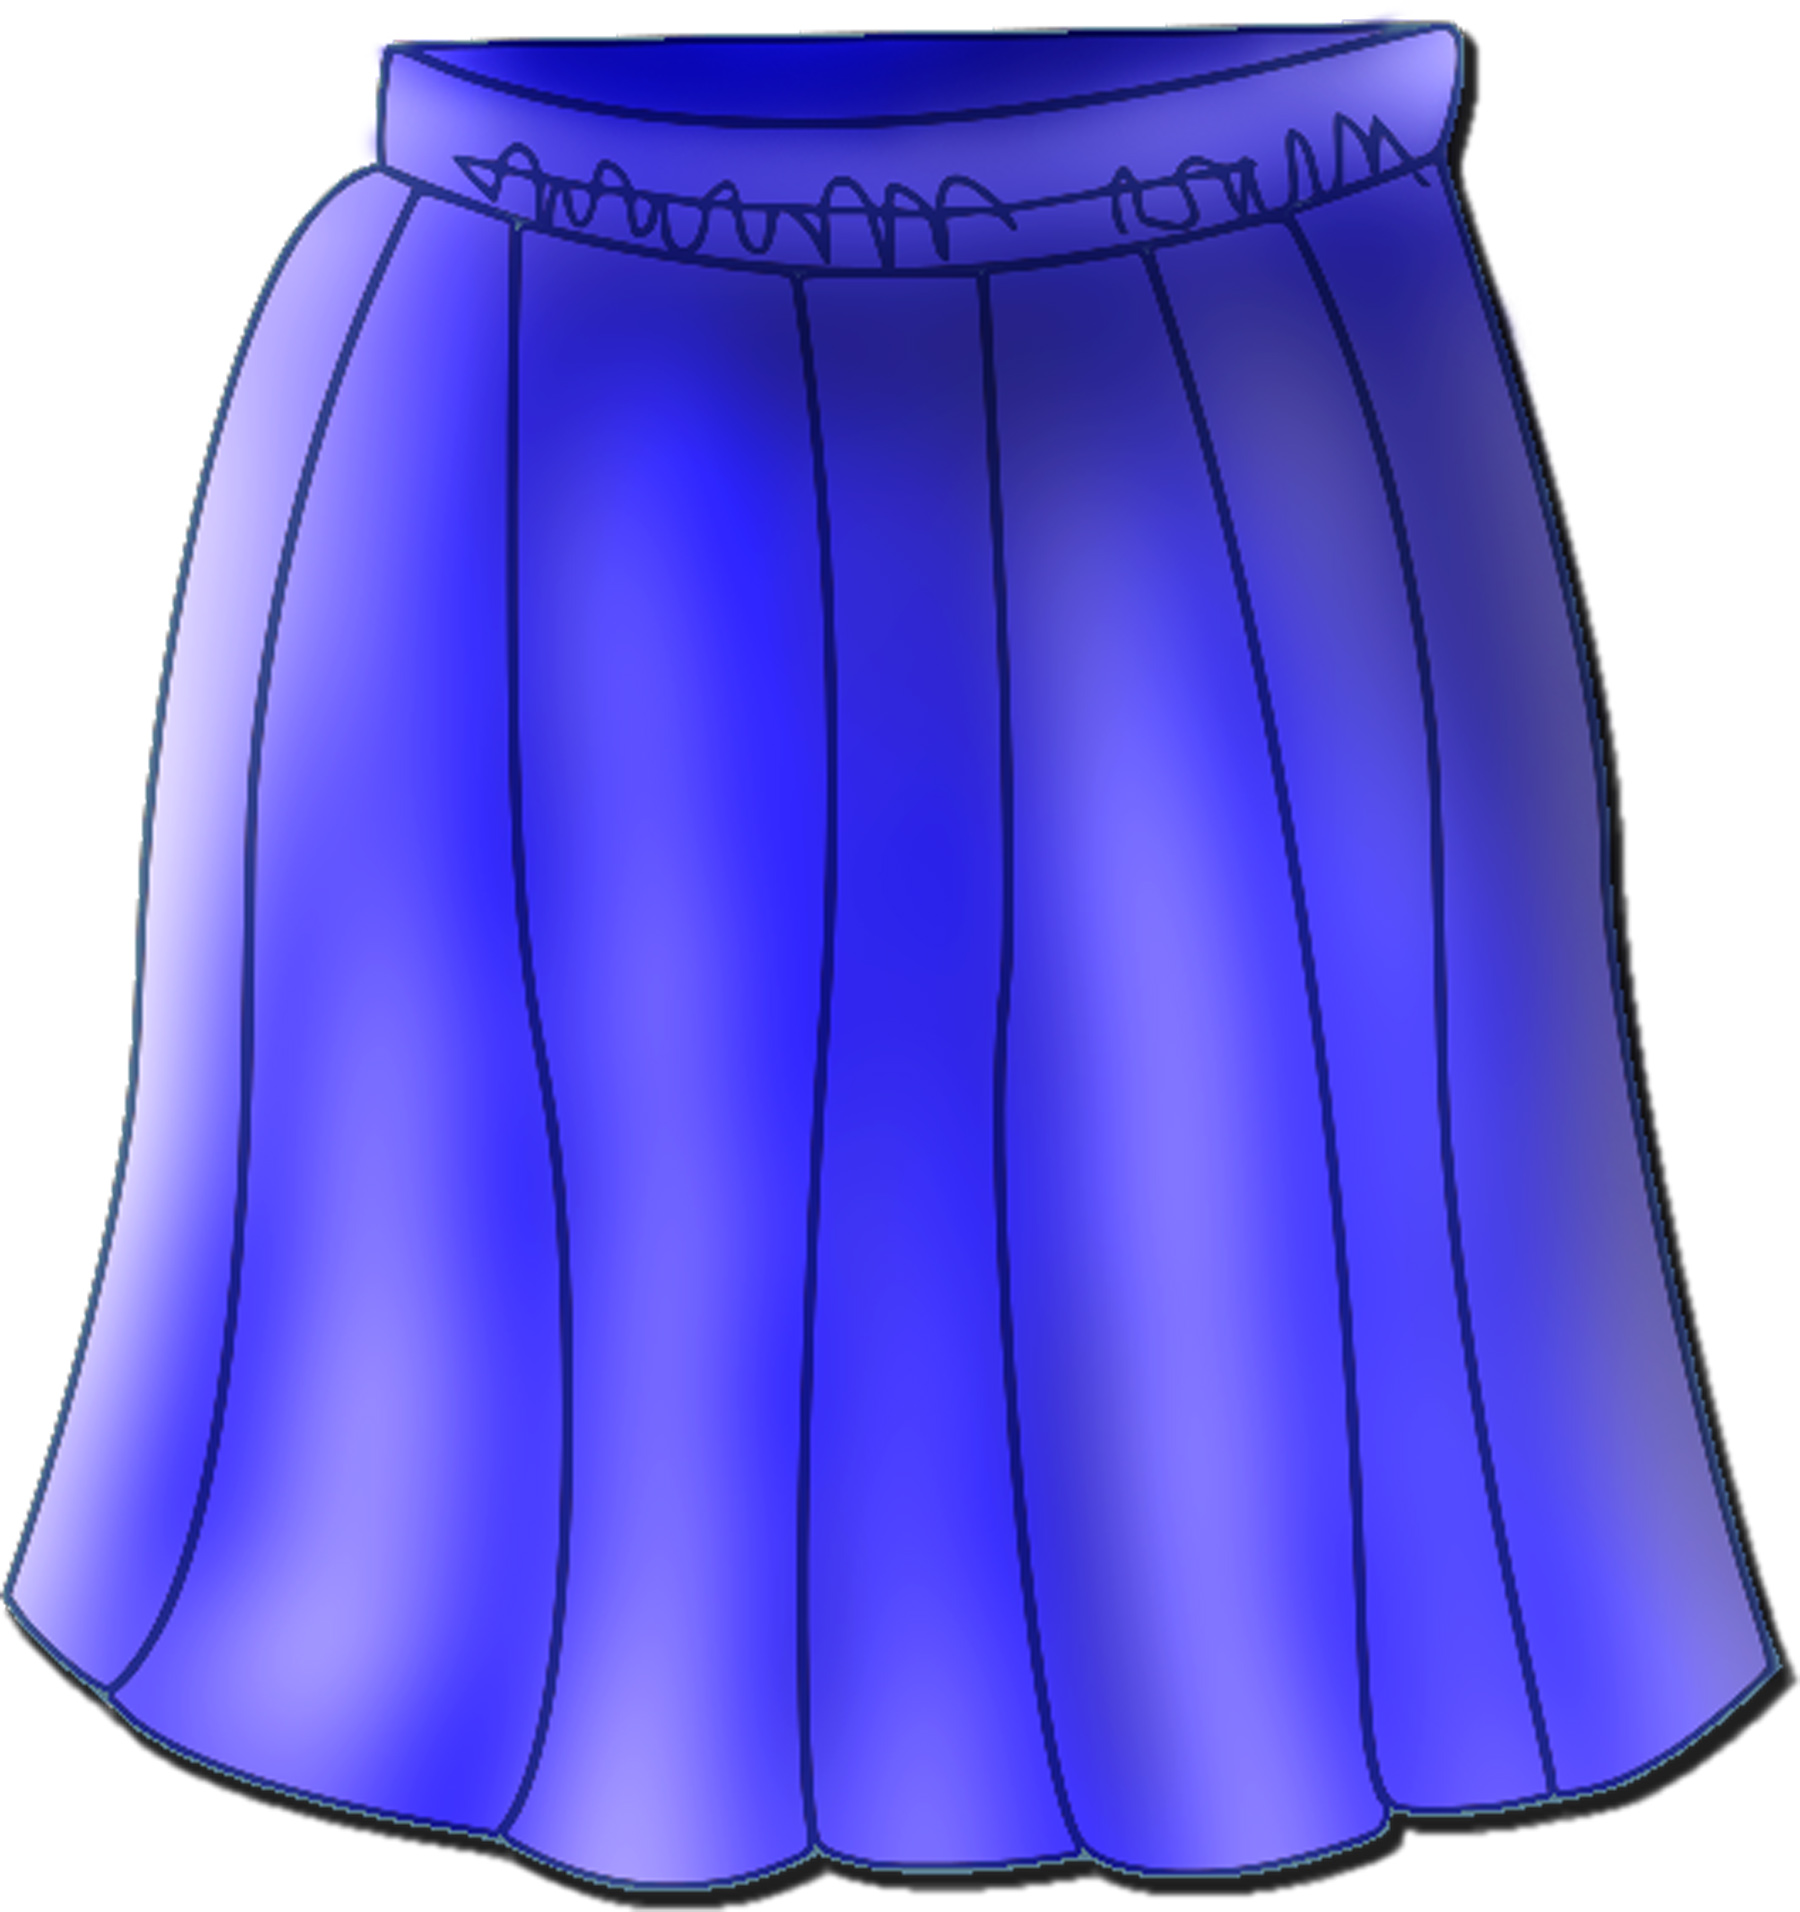 Skirt Clip Art